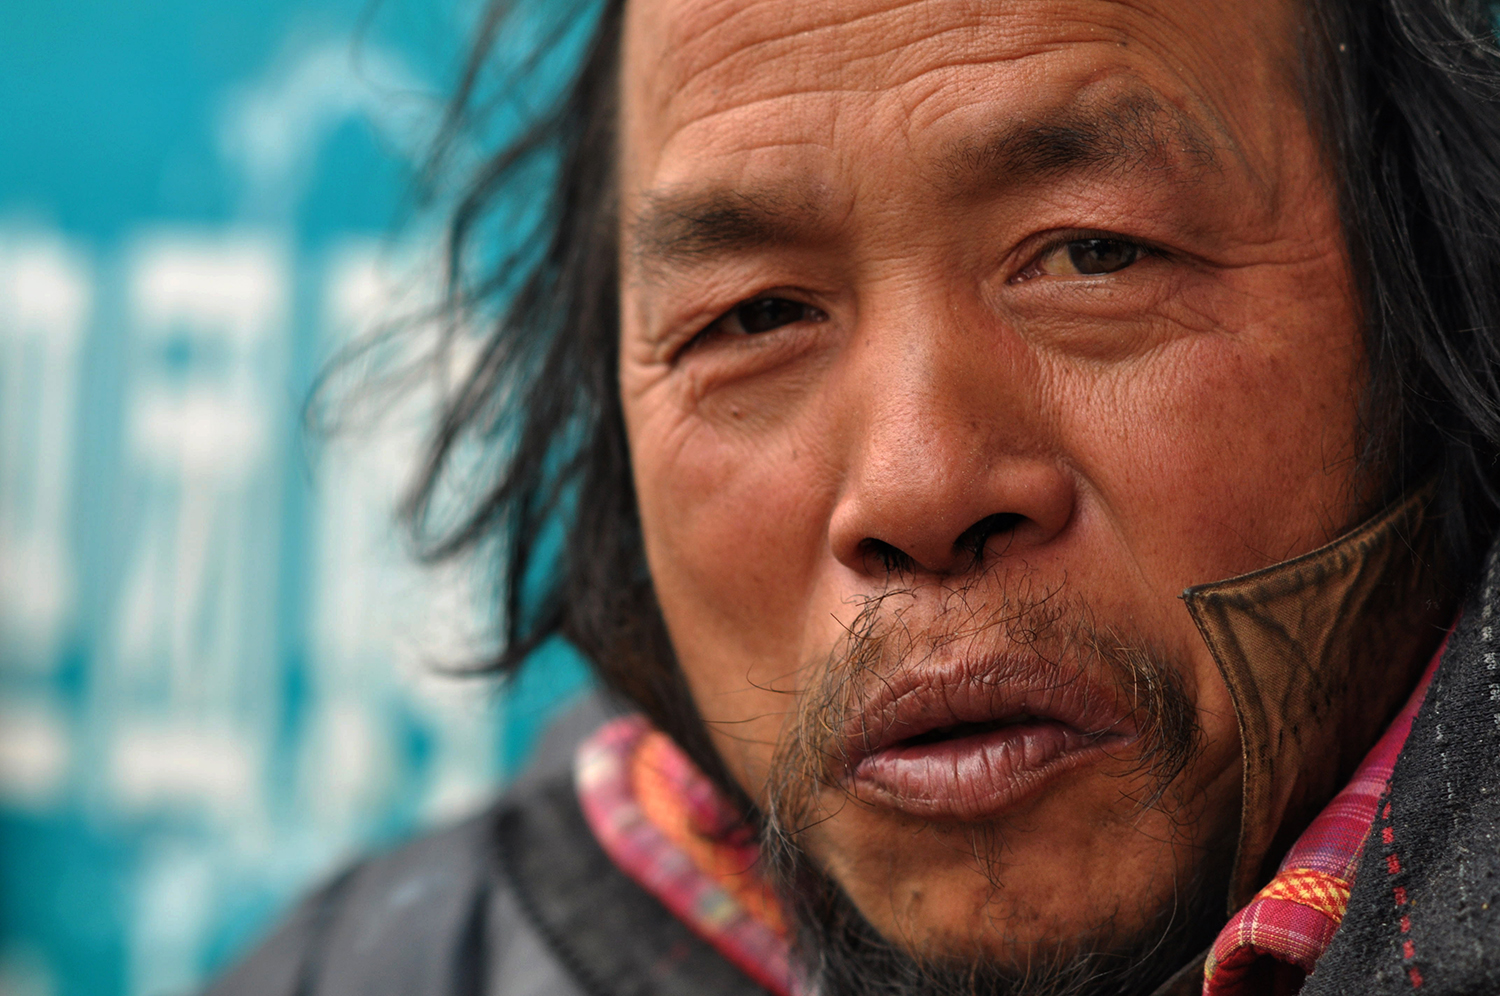  Homeless man, Han Zheng Street, Wuhan, 2015 